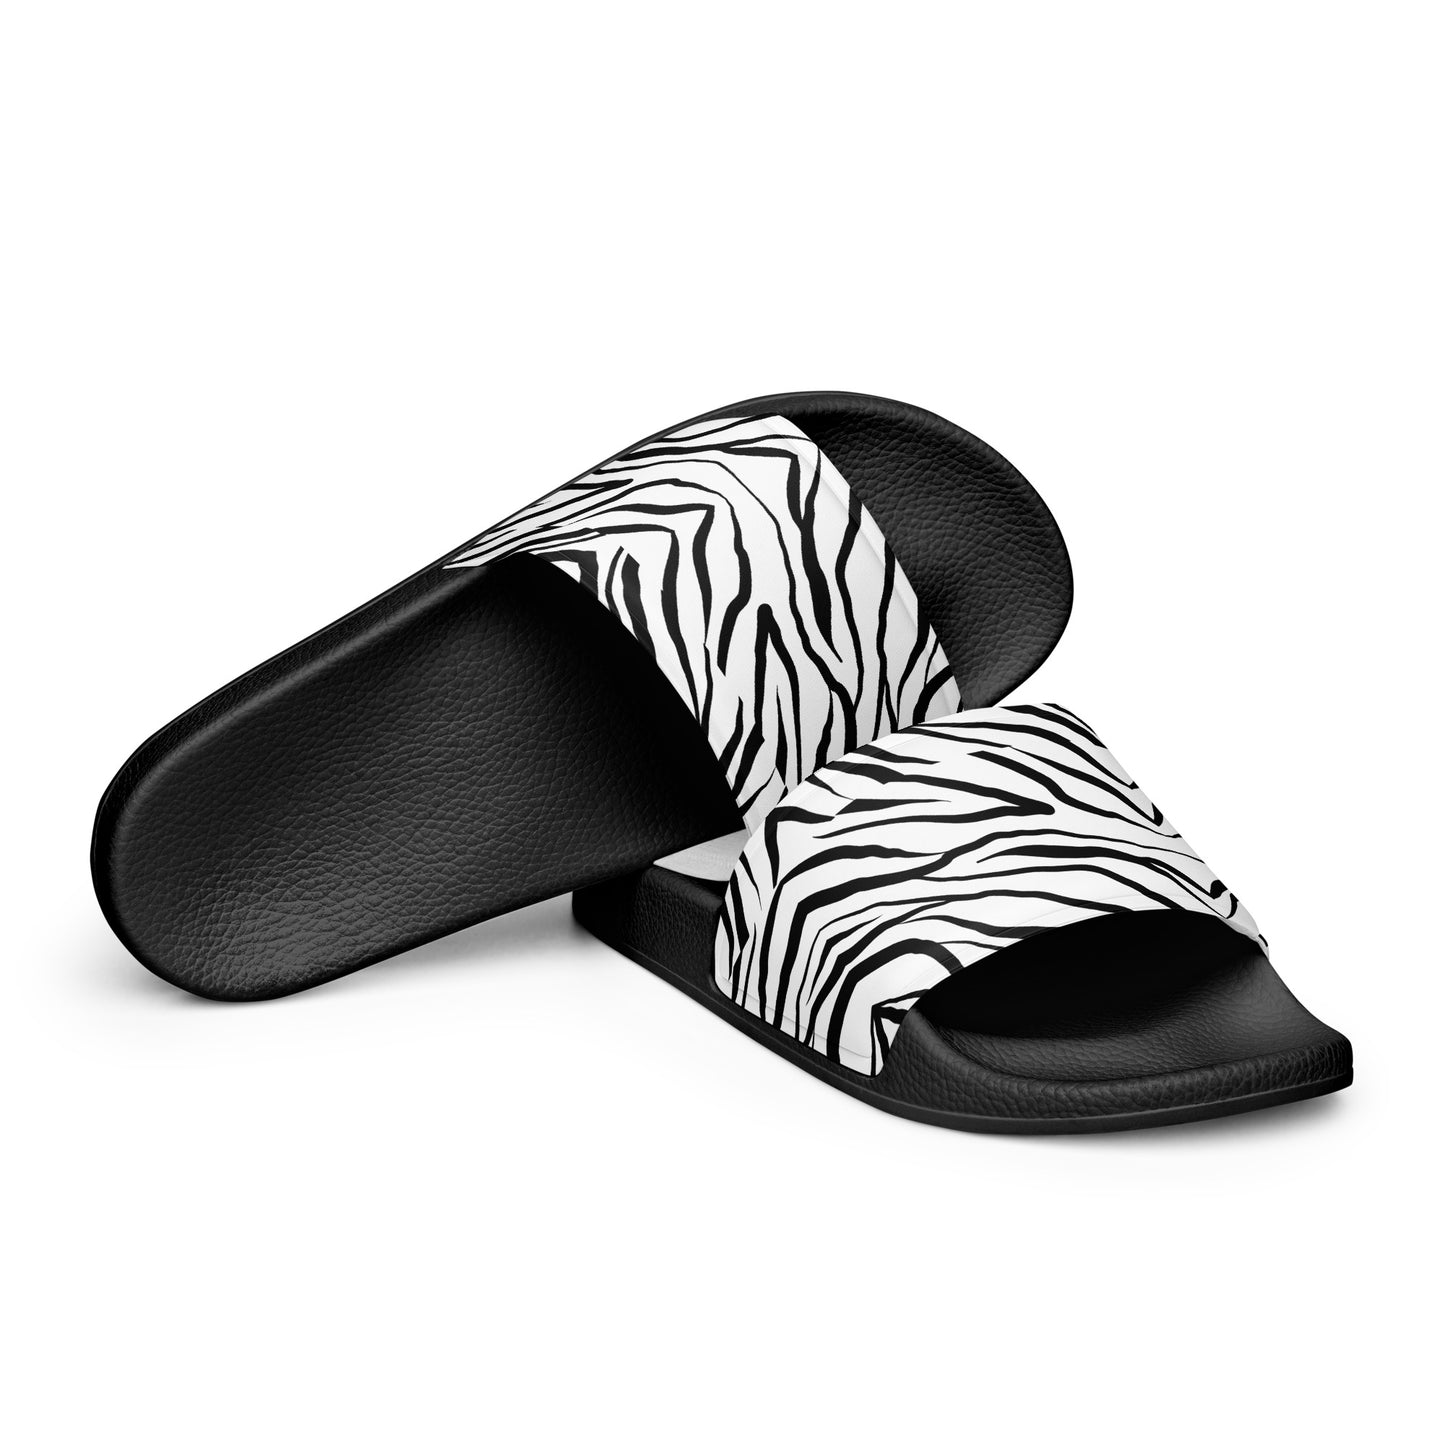 Striped Zebra Vibrance Women's Slides